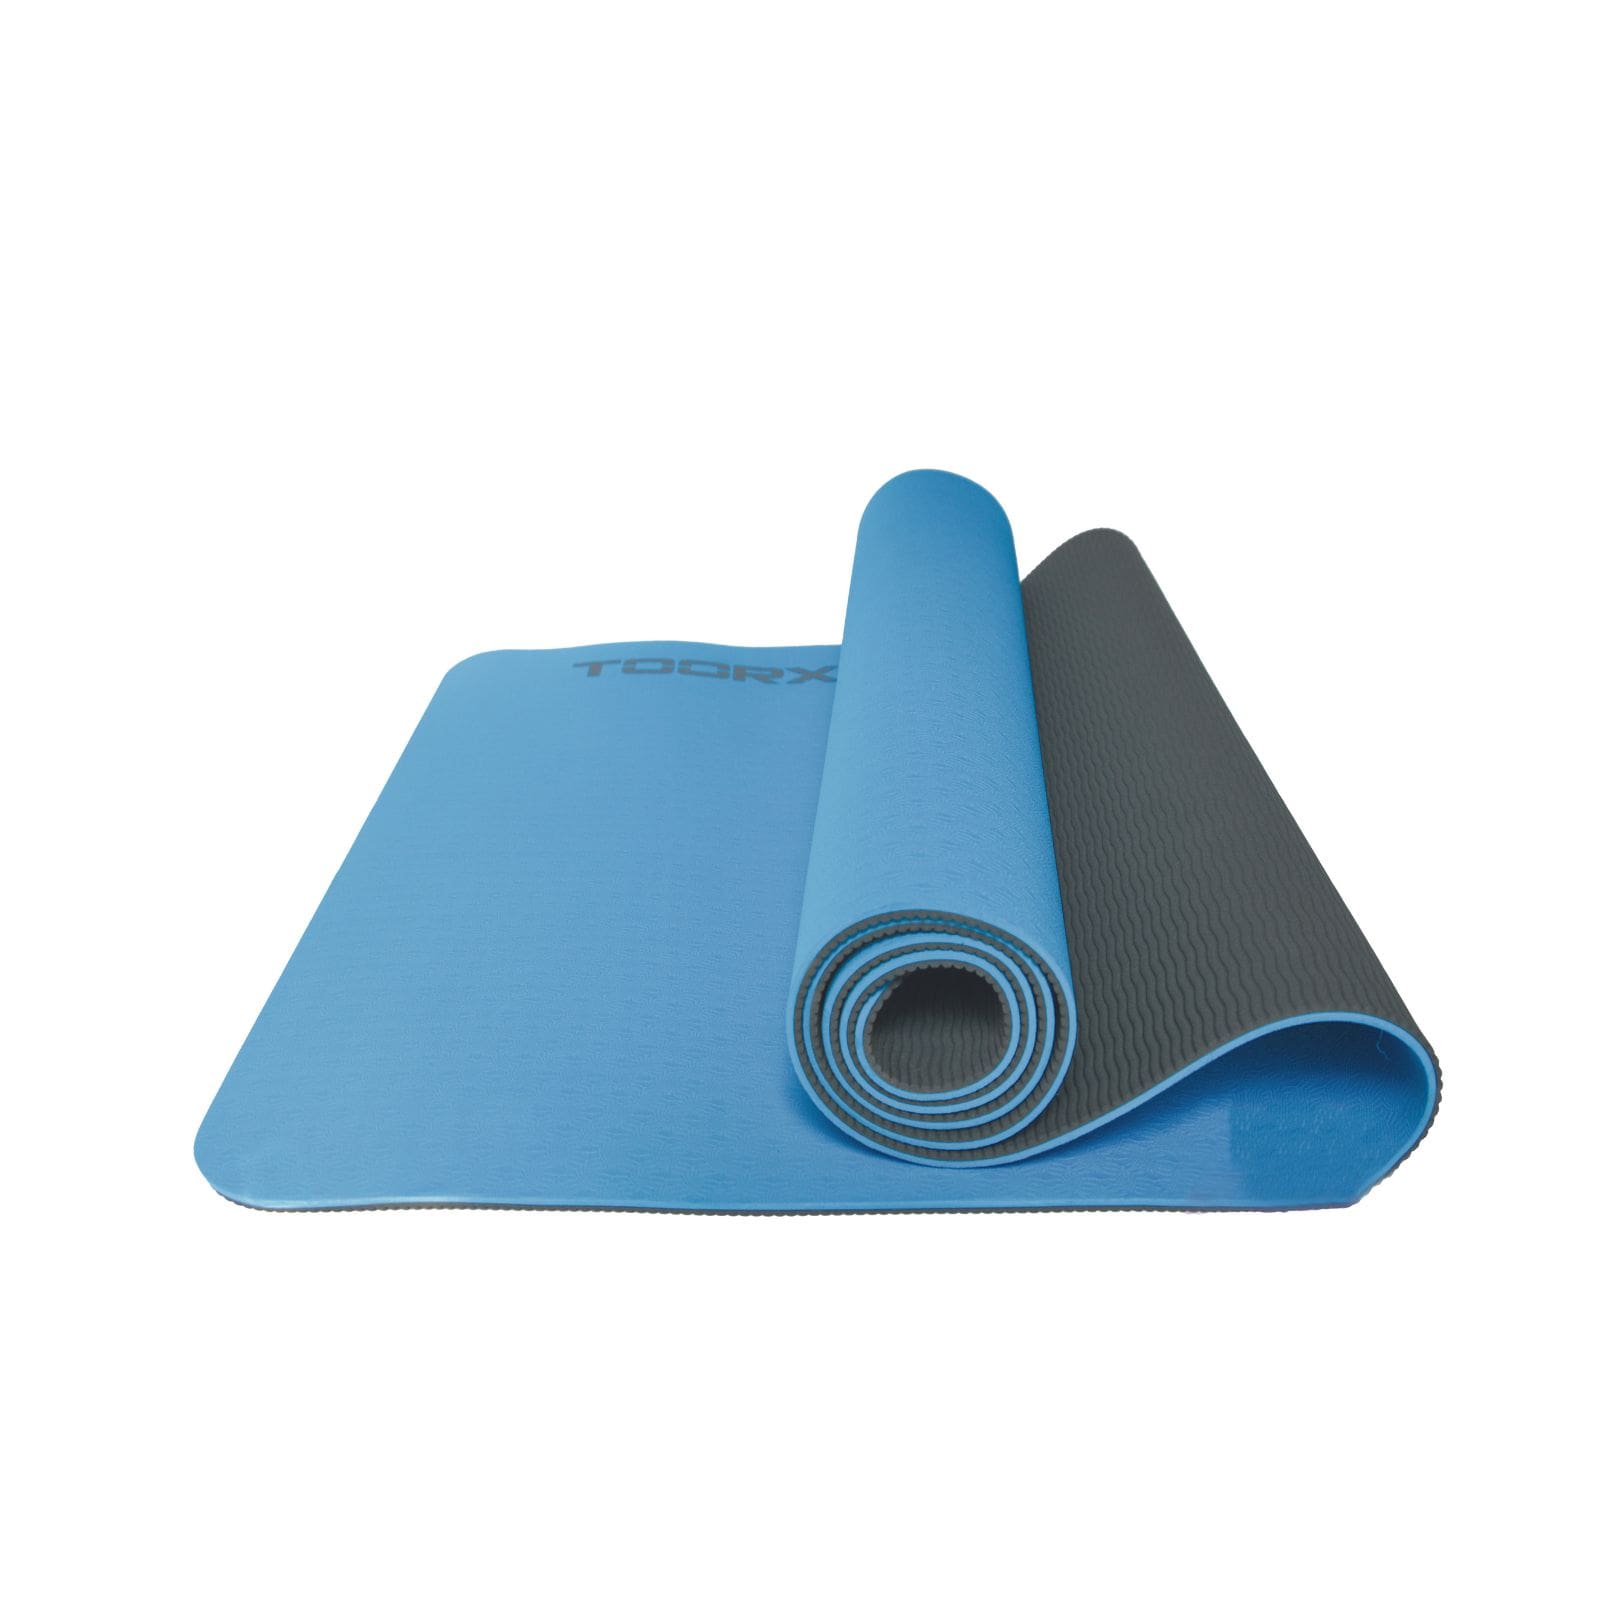 Materassino Yoga Bicolore in Gomma – Wip Sport